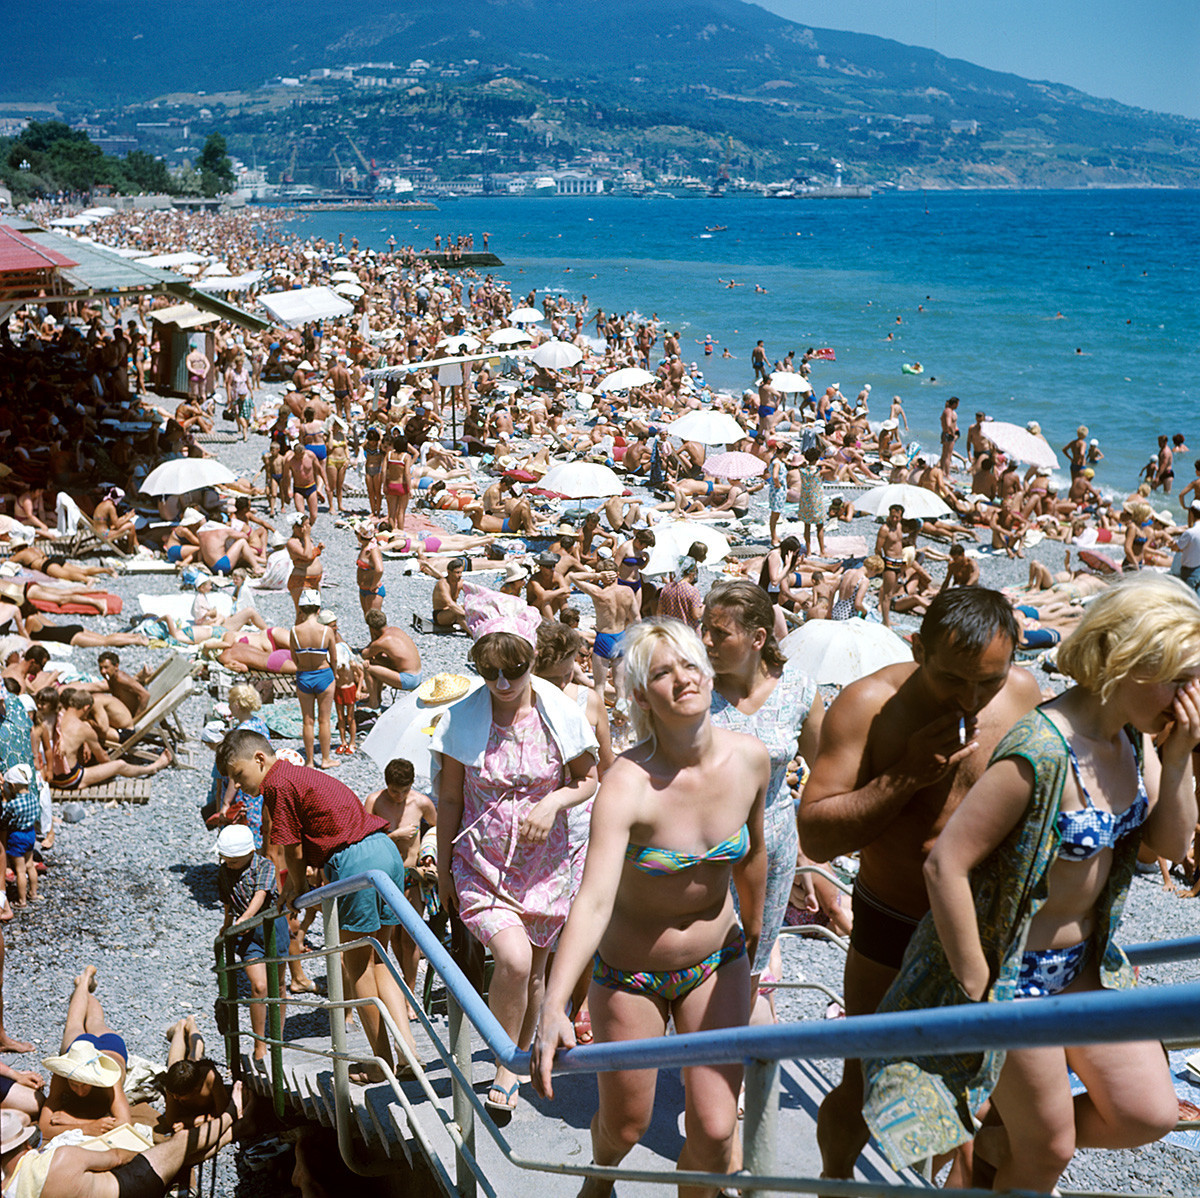 Градска плажа, Јалта, 1969 година.
